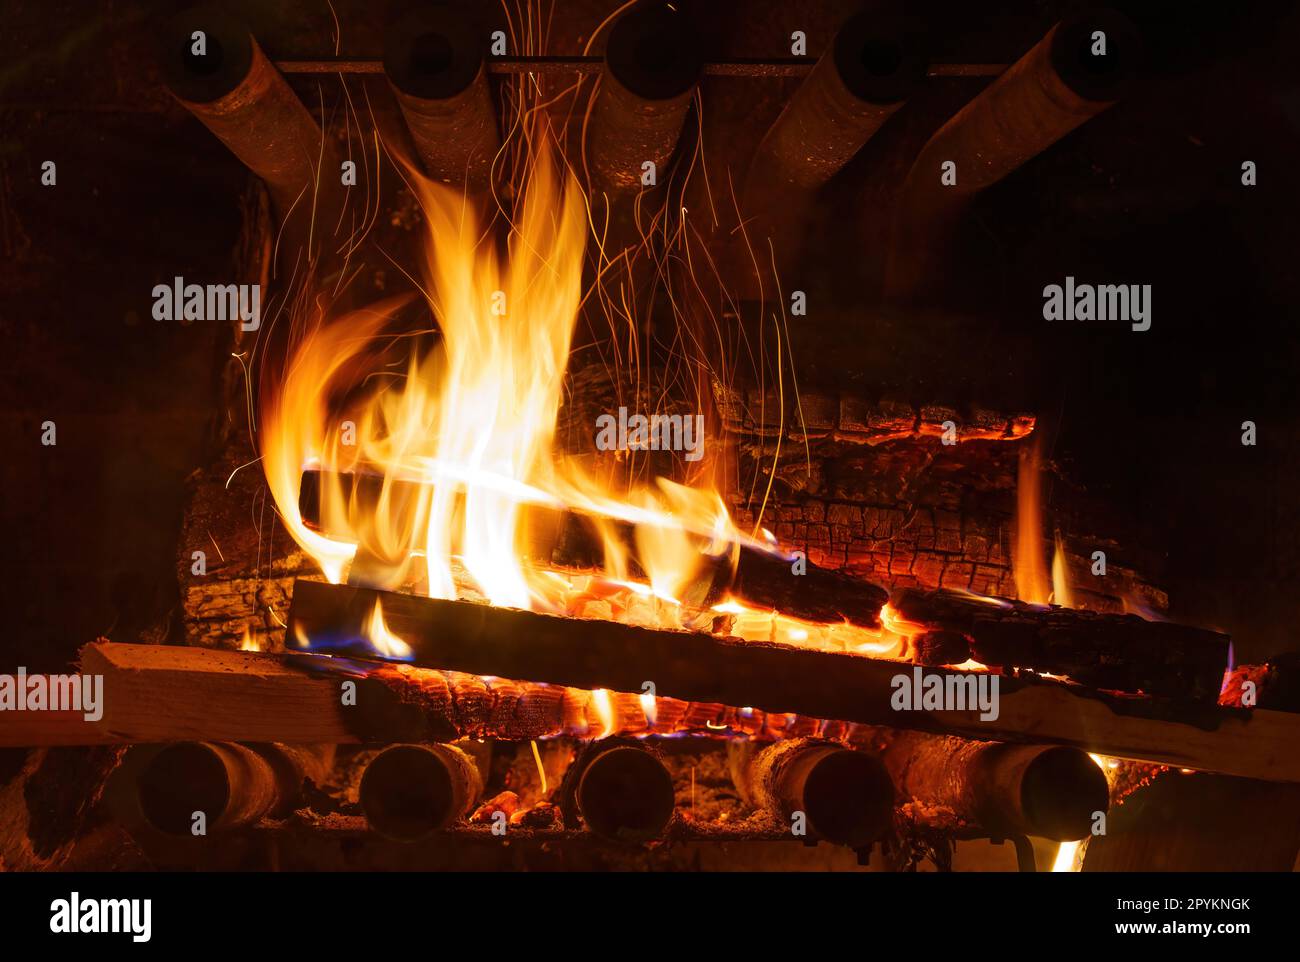 Eine intensive Nahaufnahme eines brennenden Feuers im Kamin, umgeben von feurigen Flammen und der Strahlungswärme des brennenden Holzes. Stockfoto